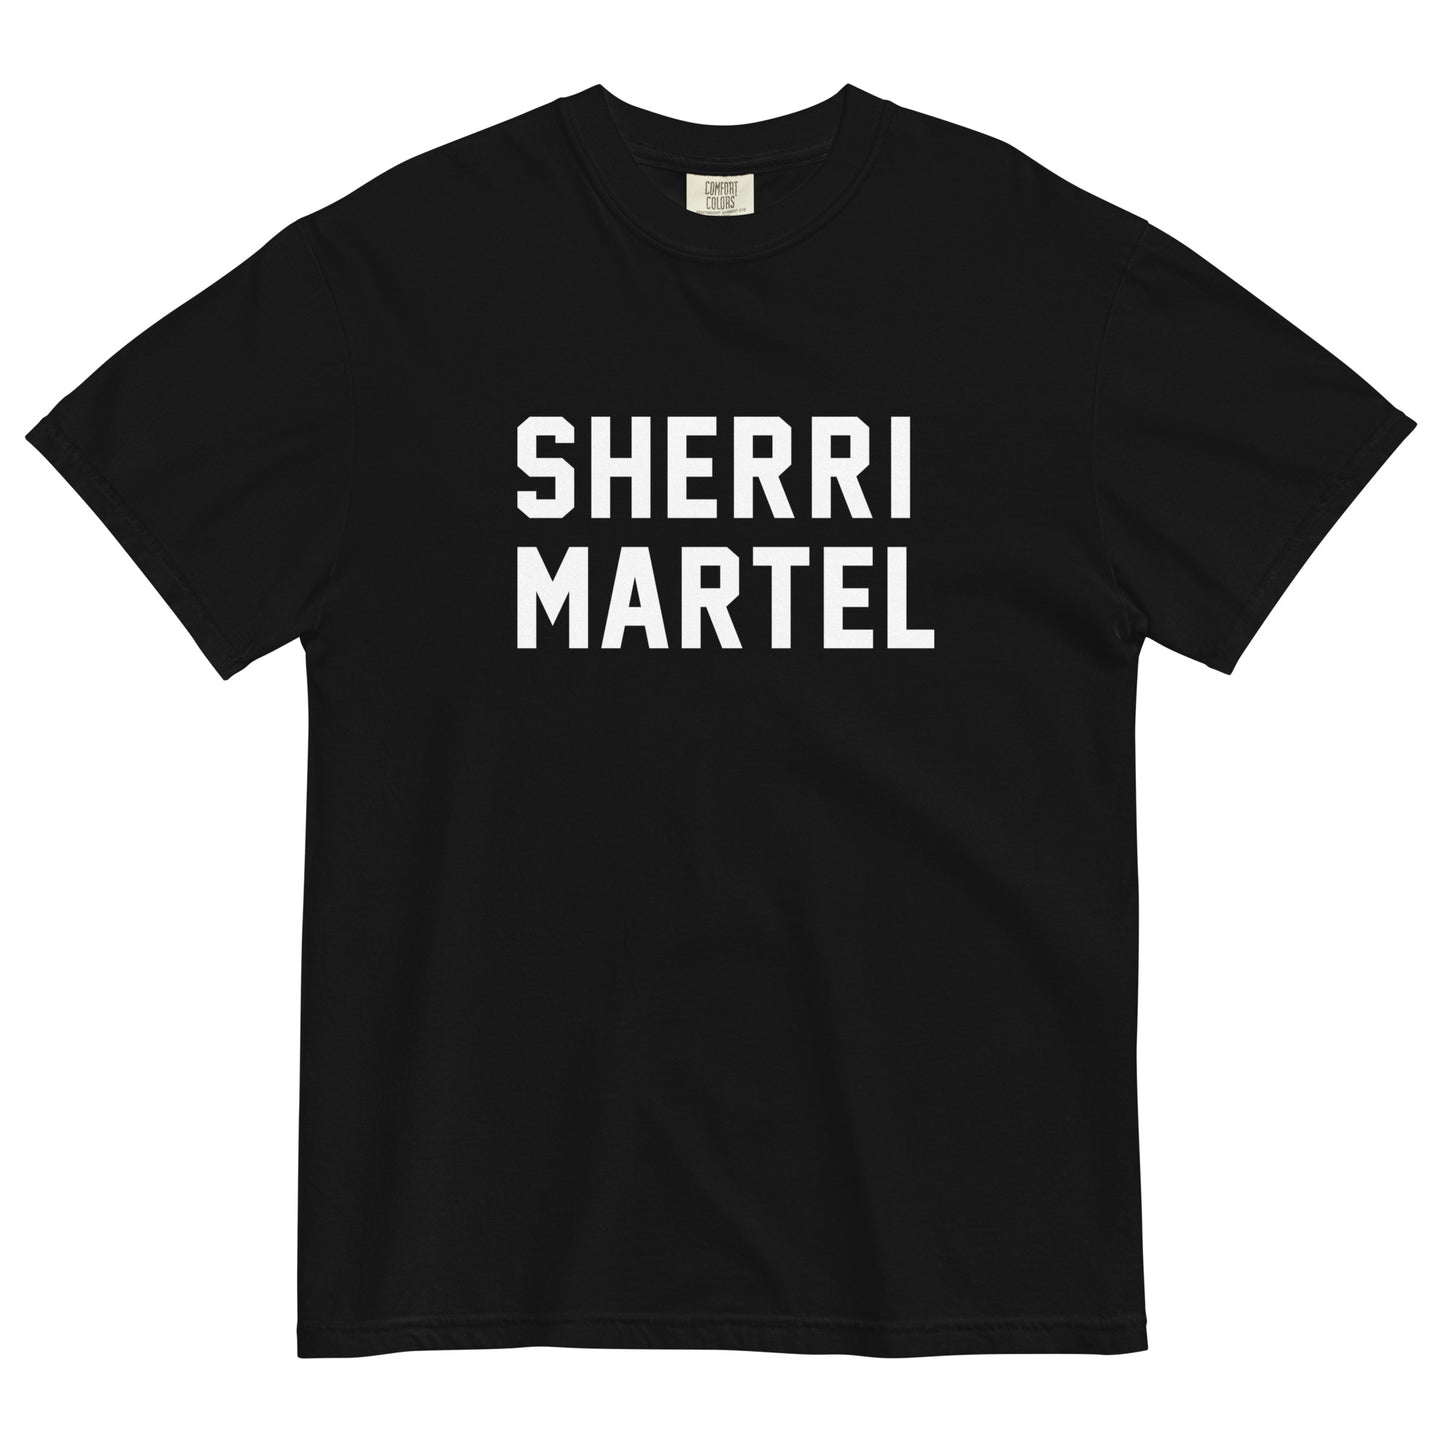 SHERRI MARTEL